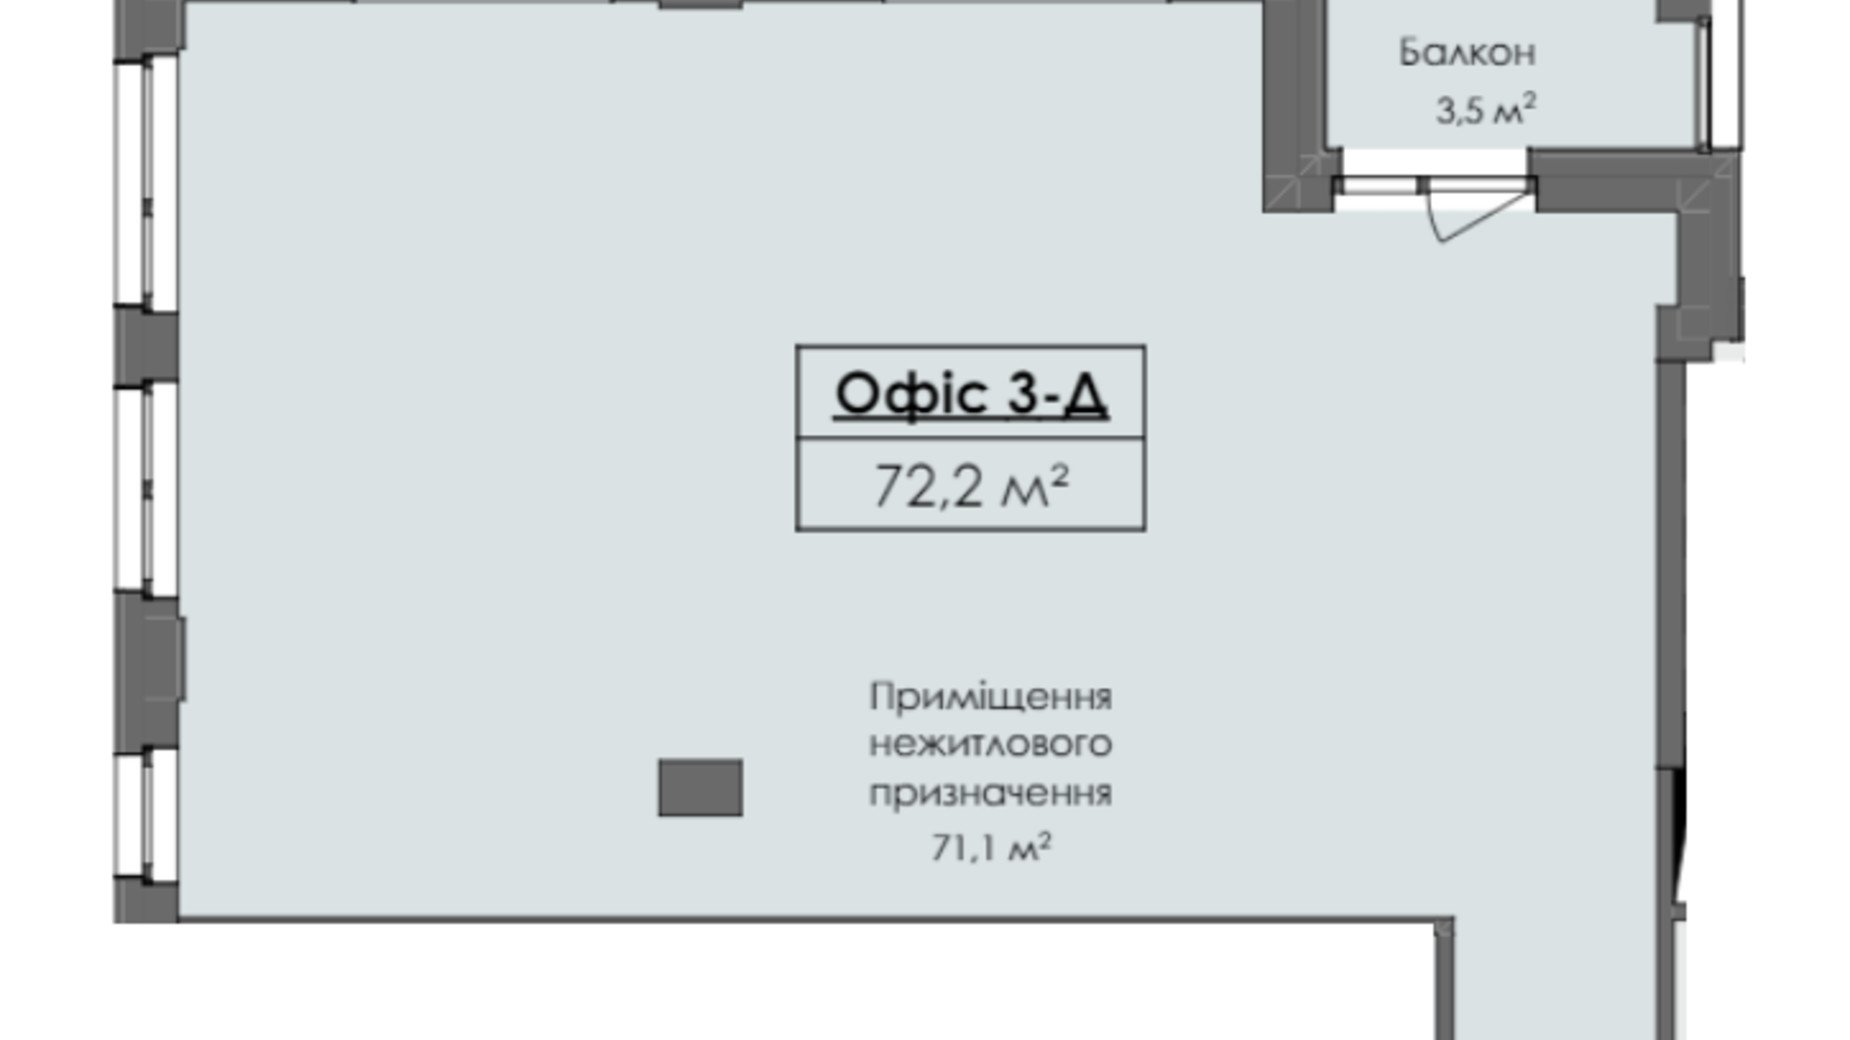 Планировка помещения в ЖК Жовтневый 72.2 м², фото 629850